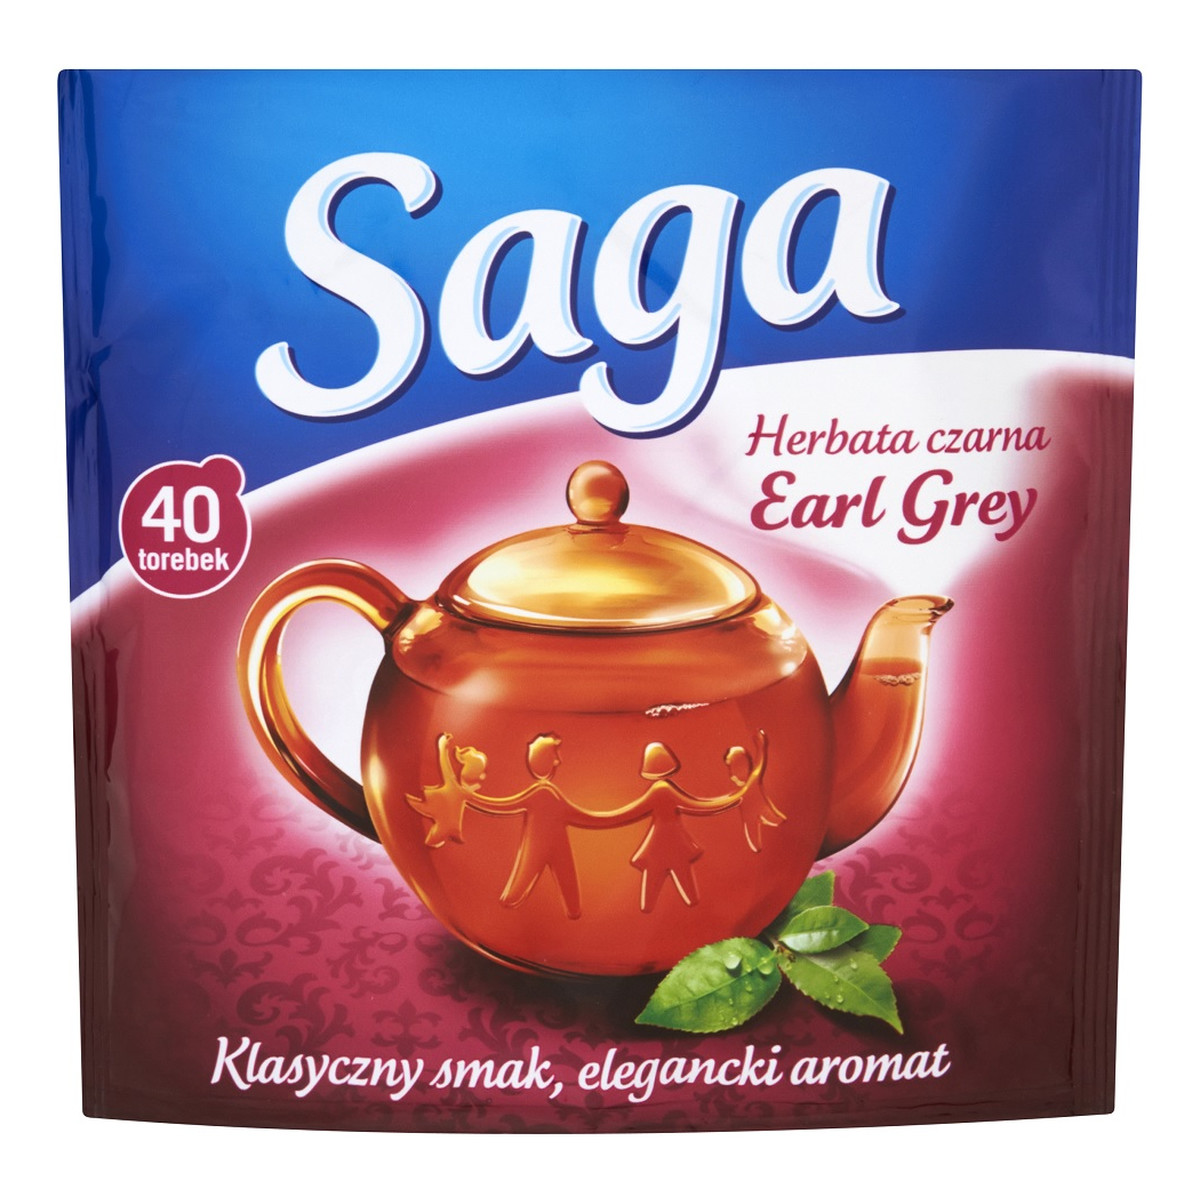 Saga Herbata czarna earl grey 40 torebek 60g